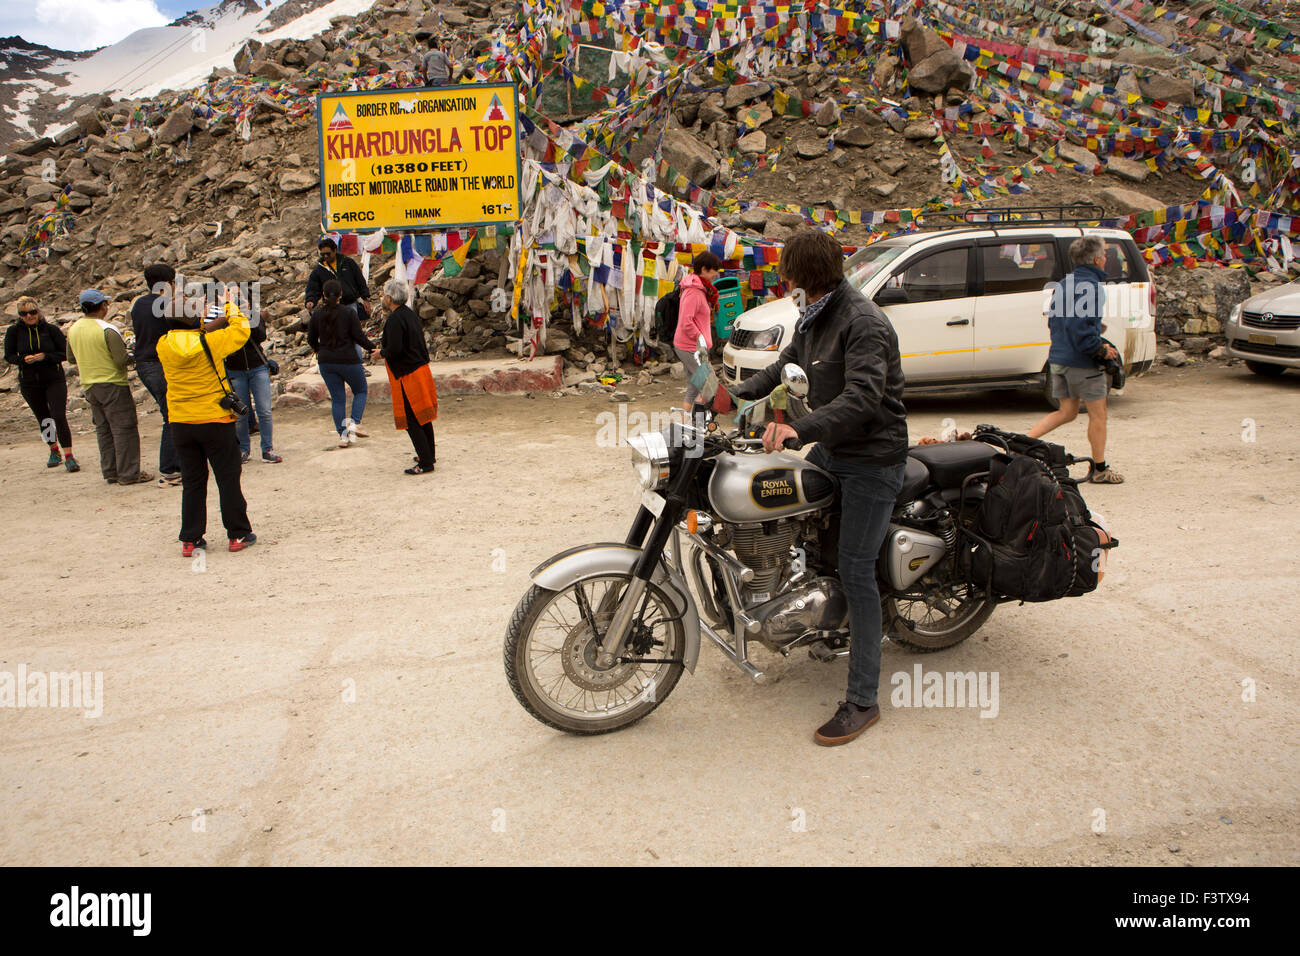 India, Jammu & Kashmir, Ladakh, Leh, Khardung La Pass top, motorcyclist watching pausing to watch, tourists at summit sign Stock Photo